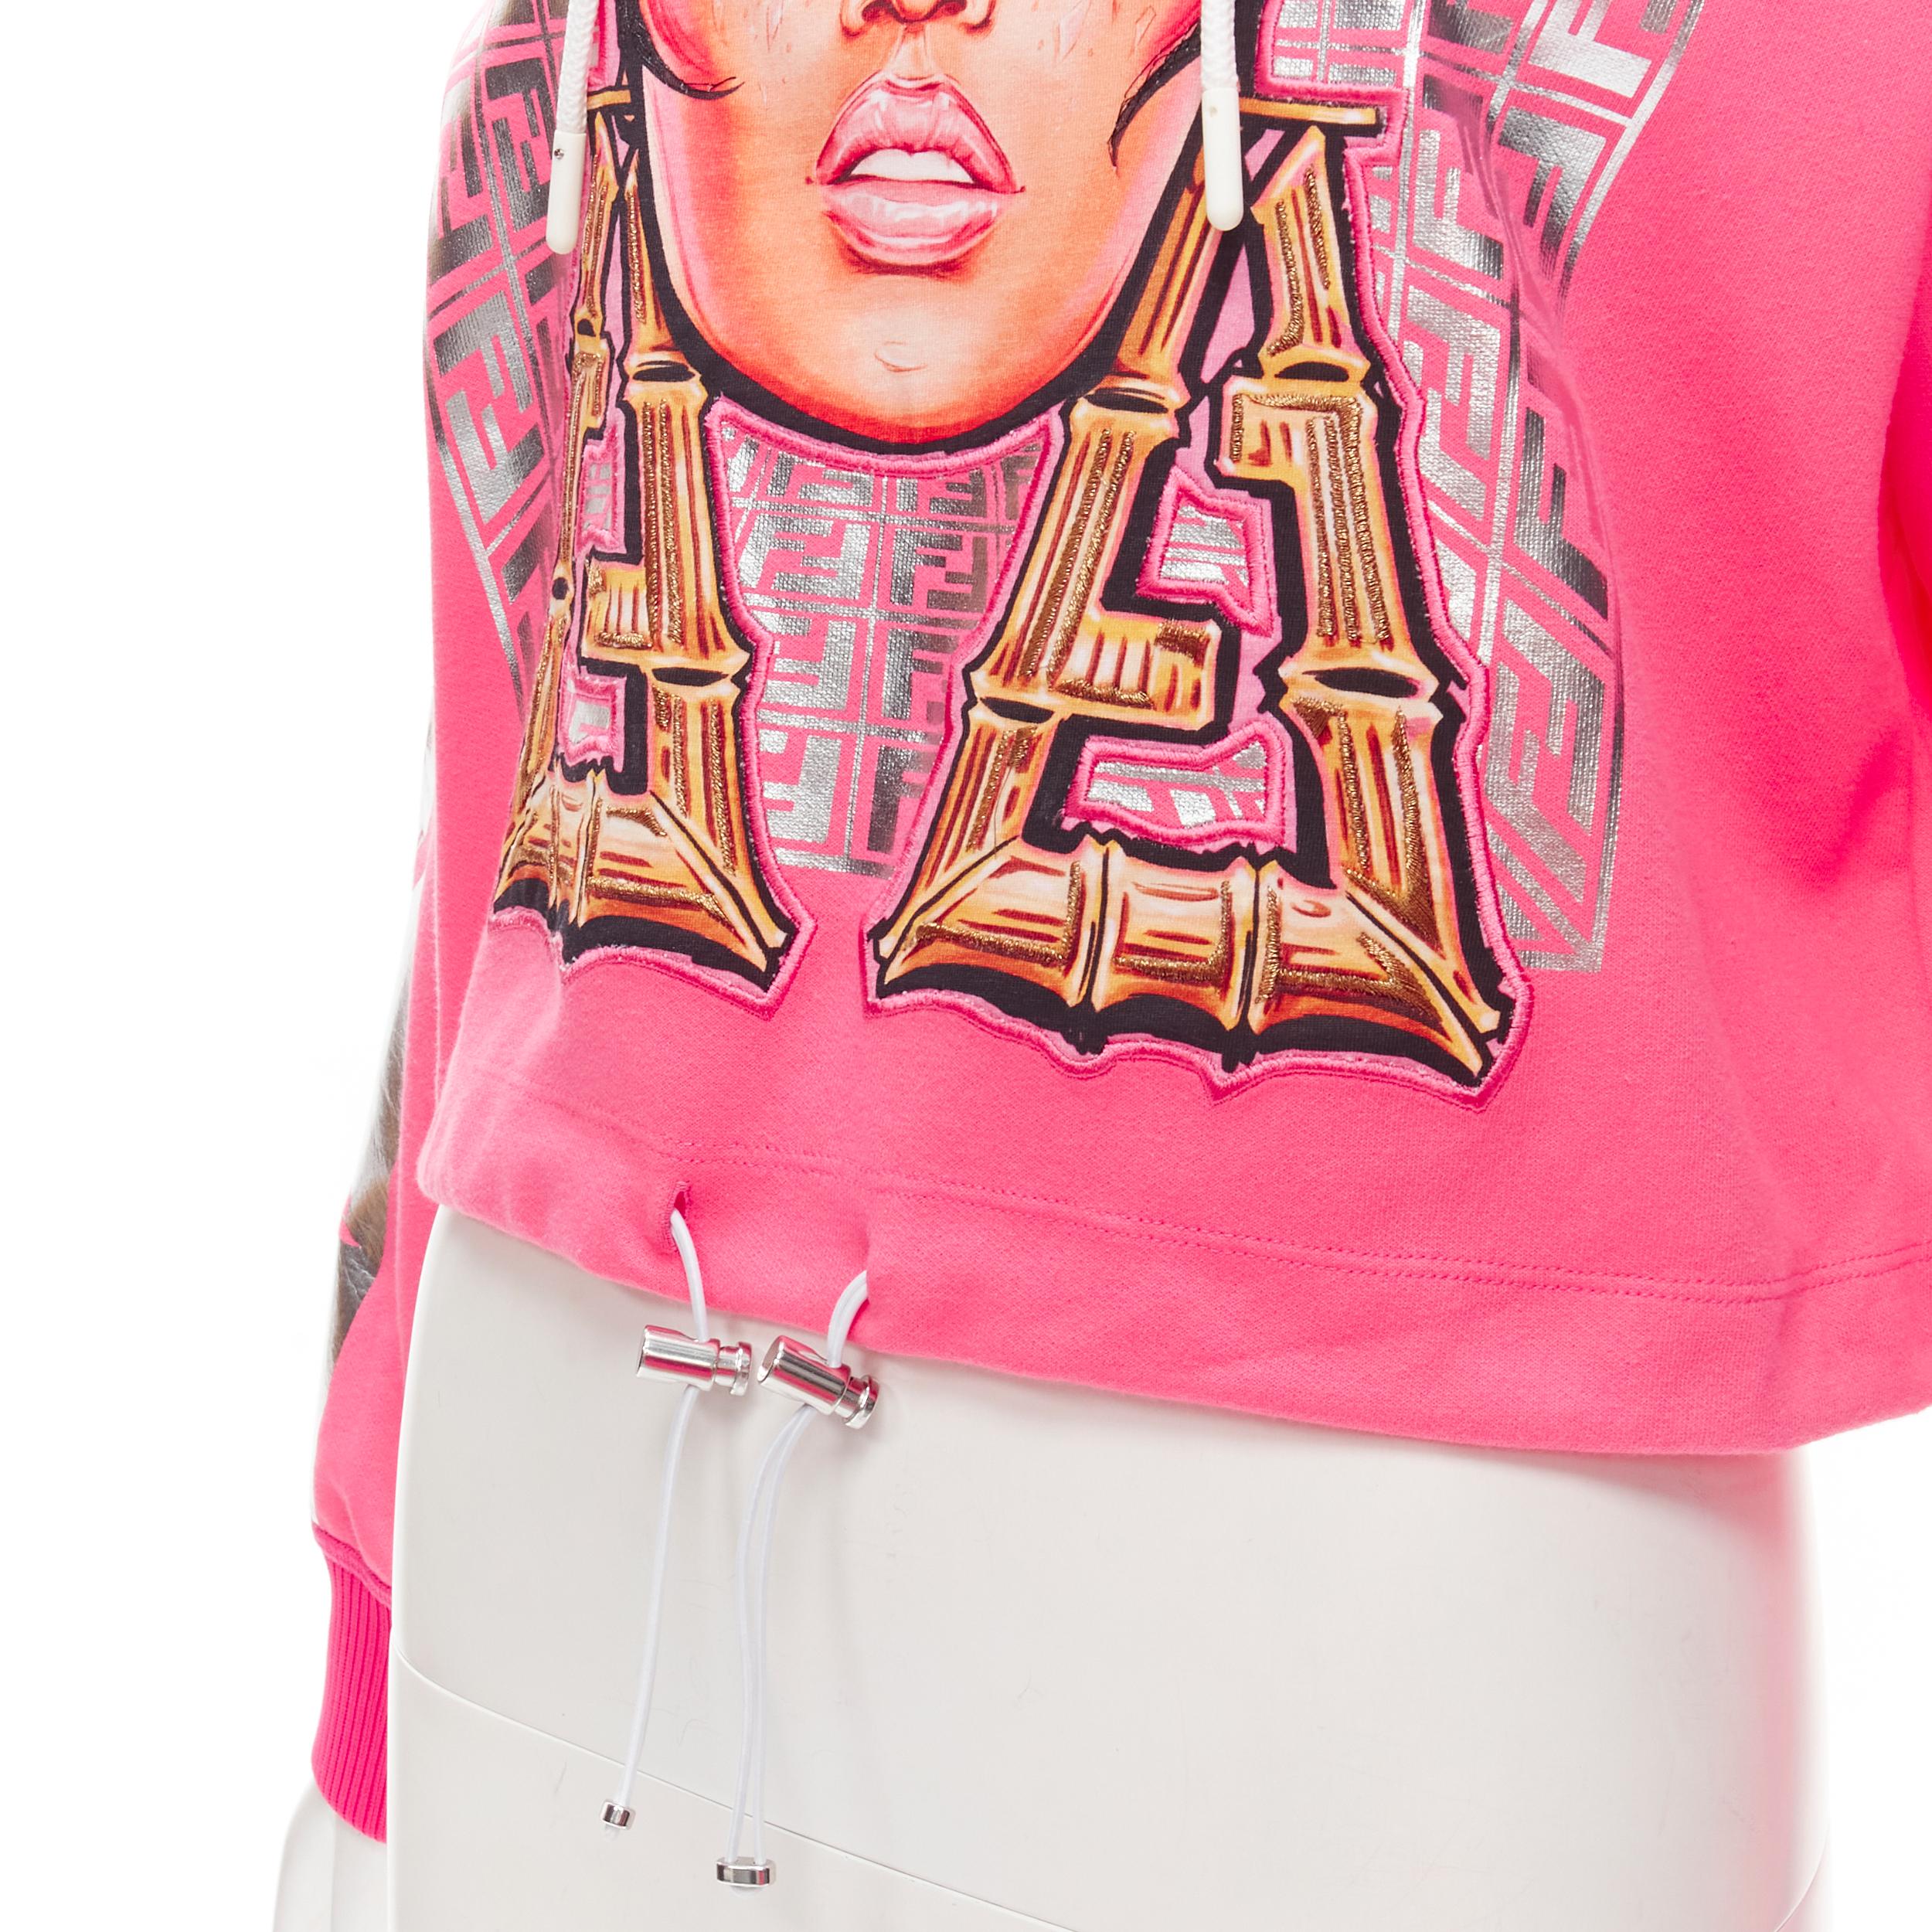 FENDI Nicki Minaj Prints On pink silver foil print cropped hoodie S 1